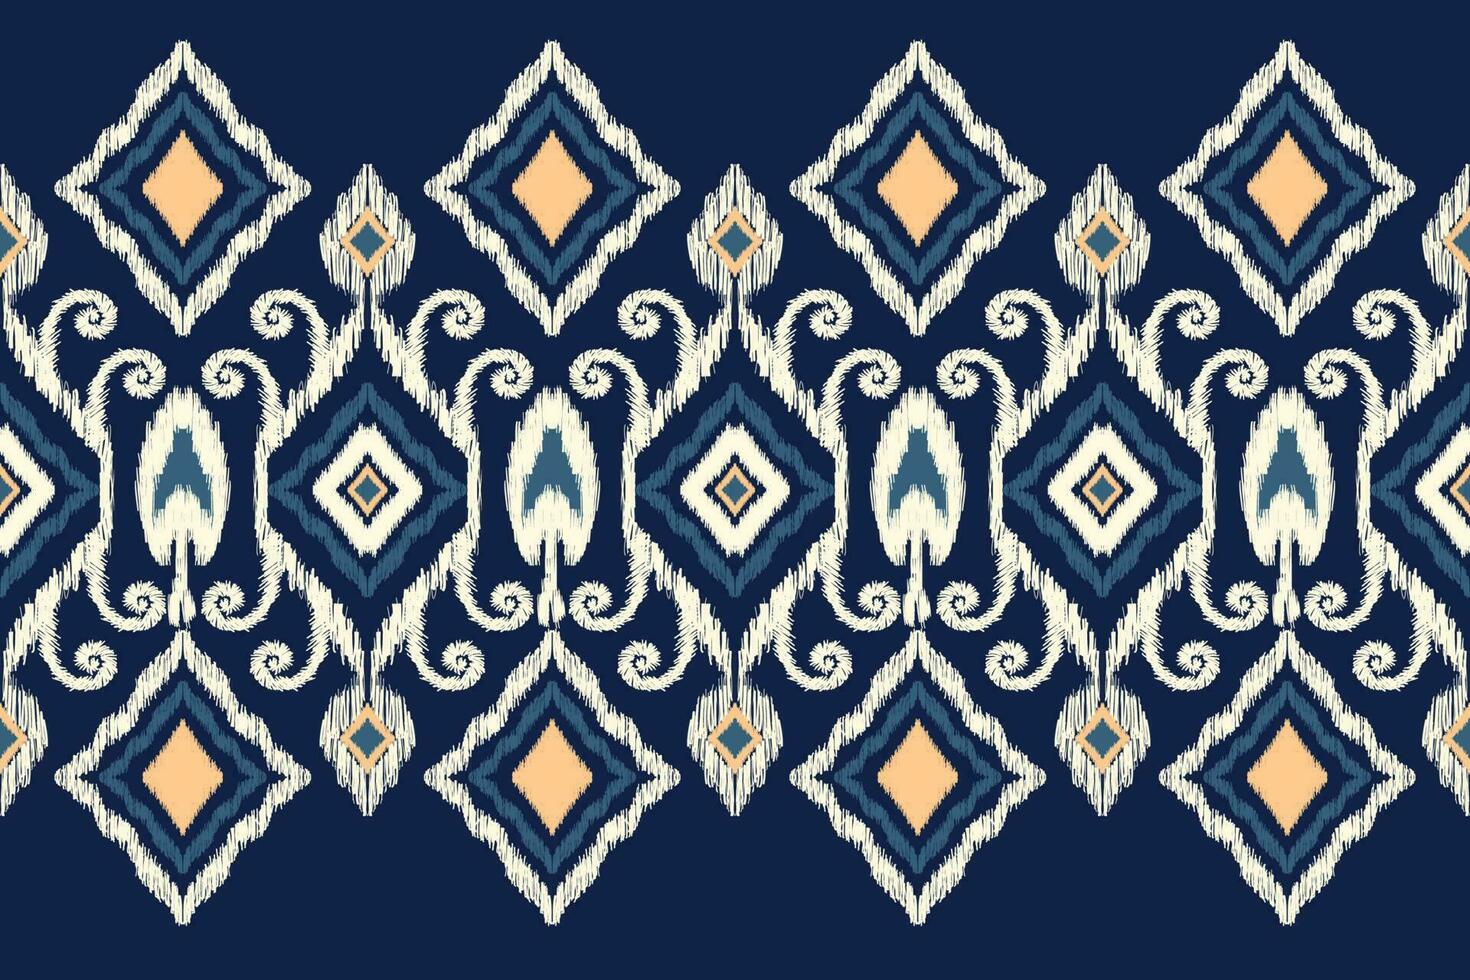 africain ikat floral paisley broderie sur marine bleu background.ikkat ethnique Oriental modèle traditionnel.aztèque style abstrait vecteur illustration.design pour texture,tissu,habillement,emballage,décoration